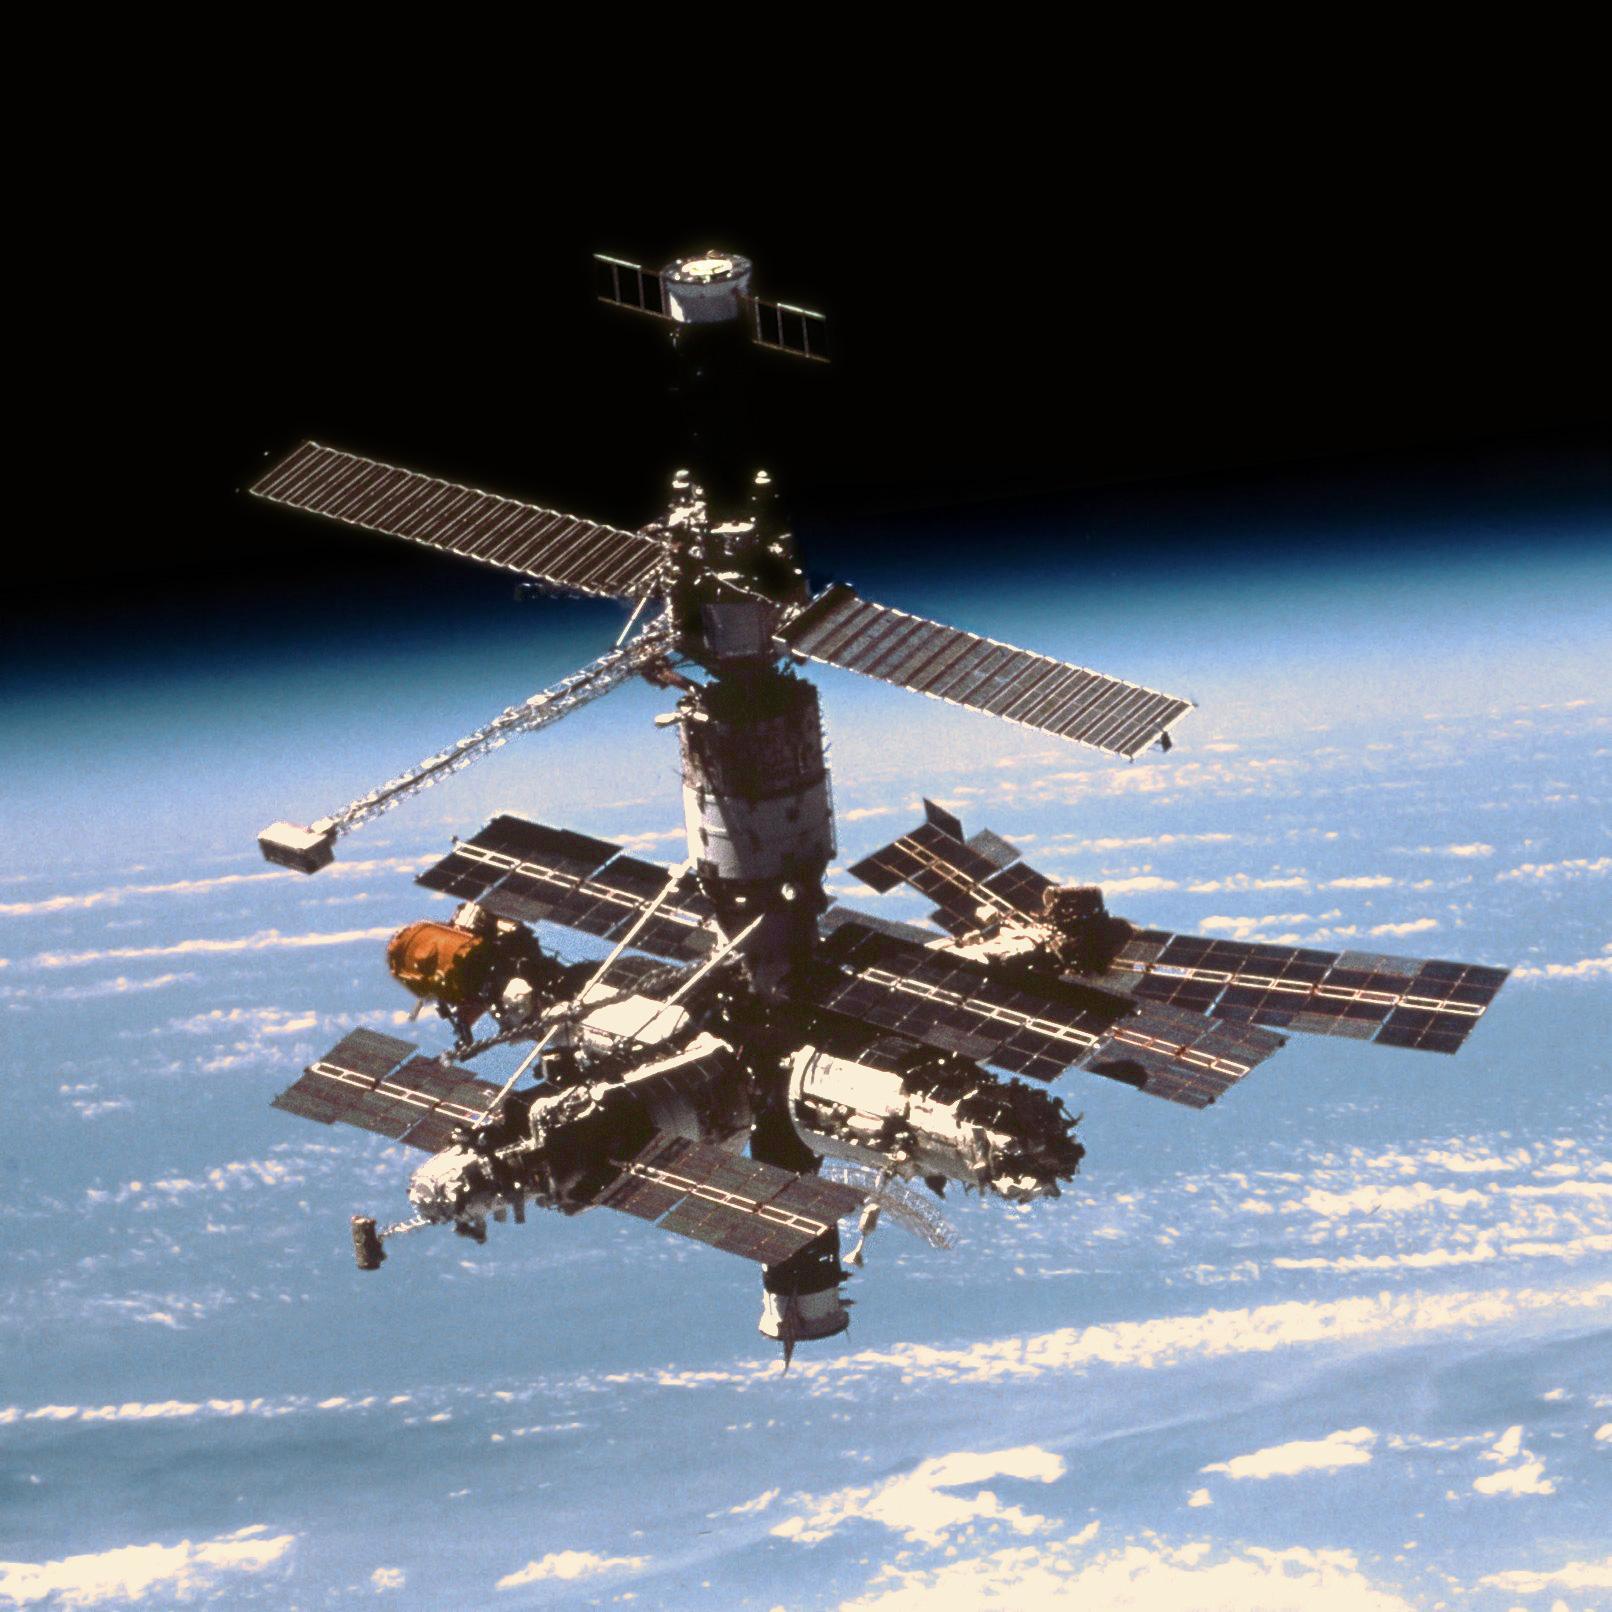 19 सितंबर को अंतरिक्ष में  शटल-मीर लिंकअप हुआ